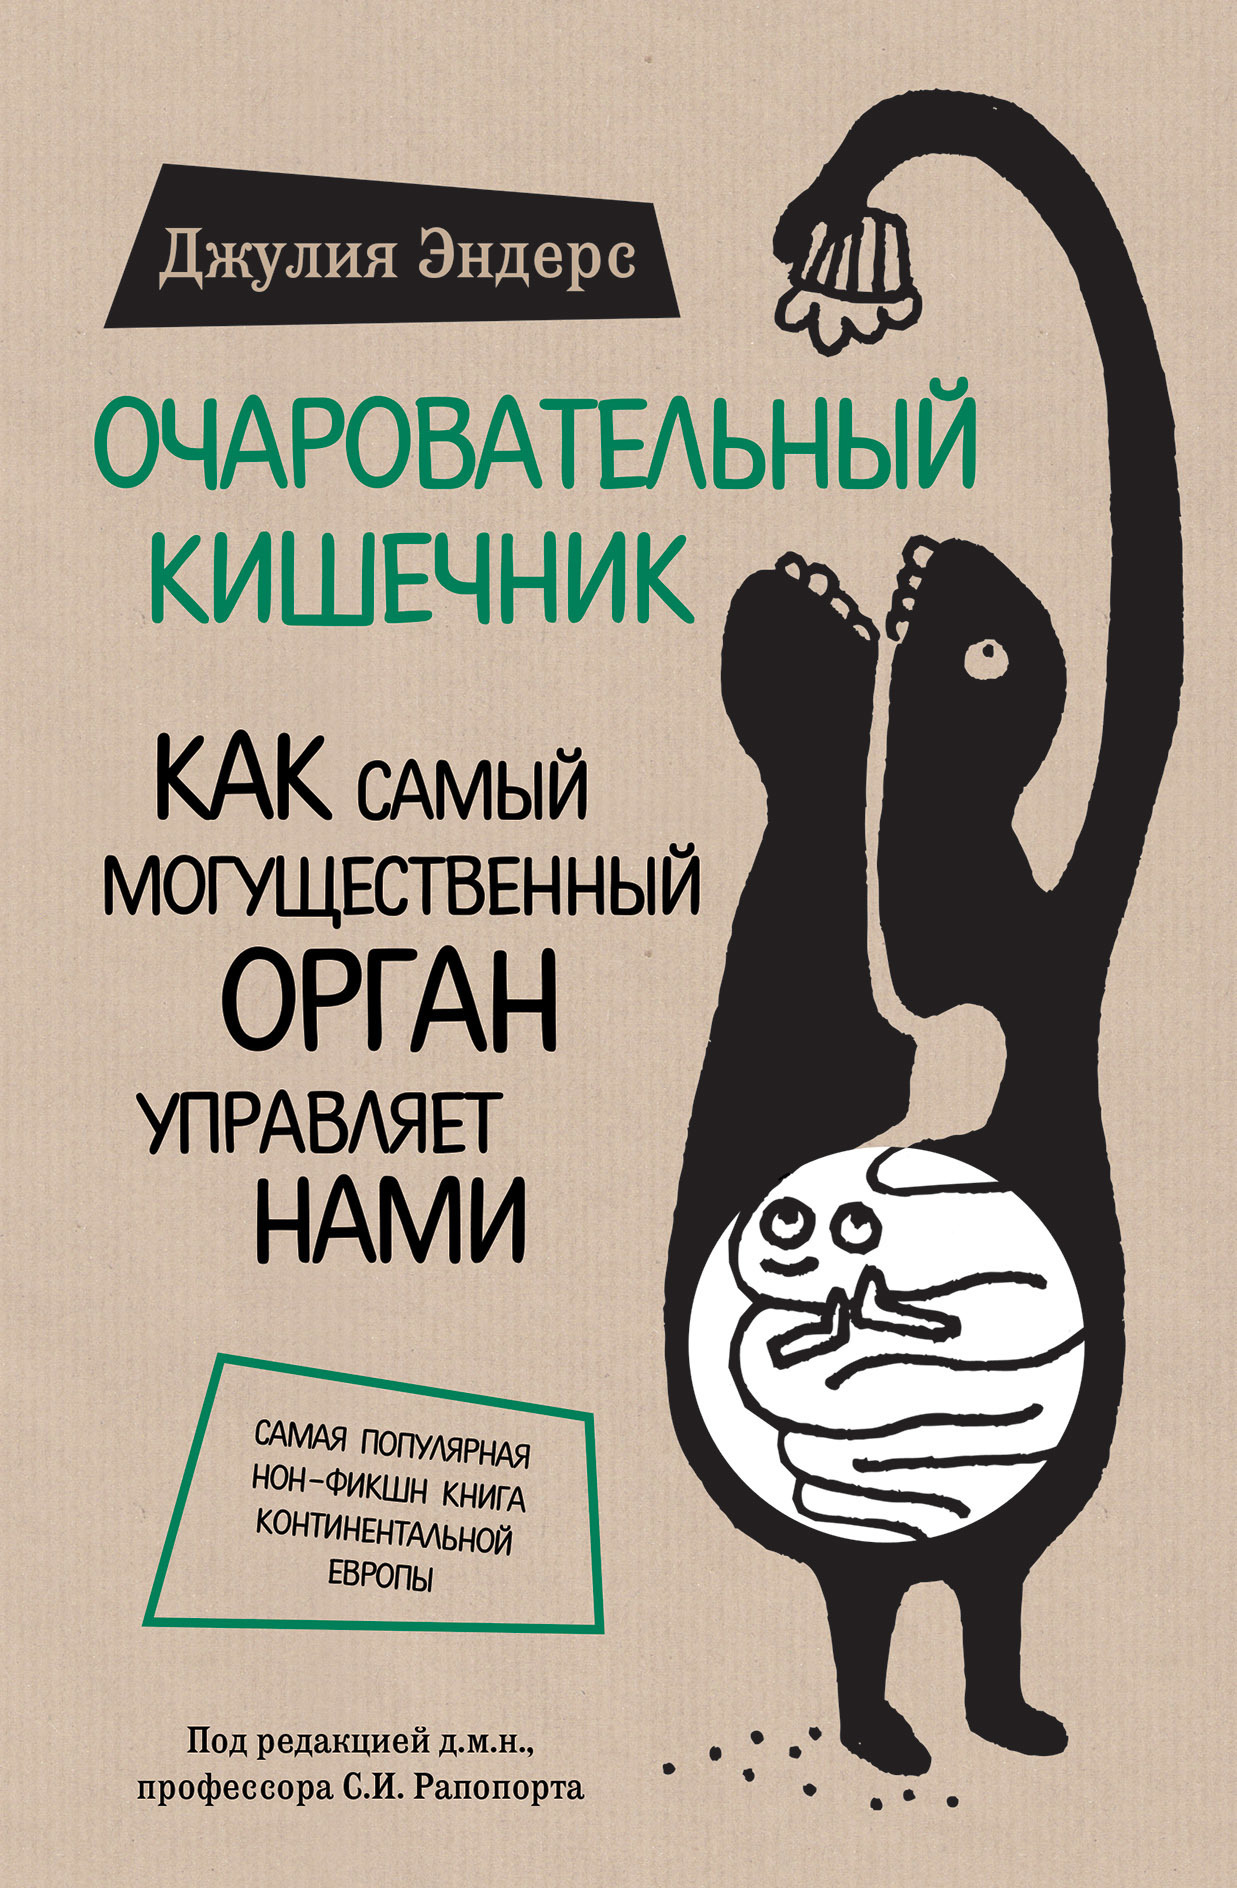 Наука и секс: 10 книг об интимной близости с научной точки зрения — The Village Казахстан